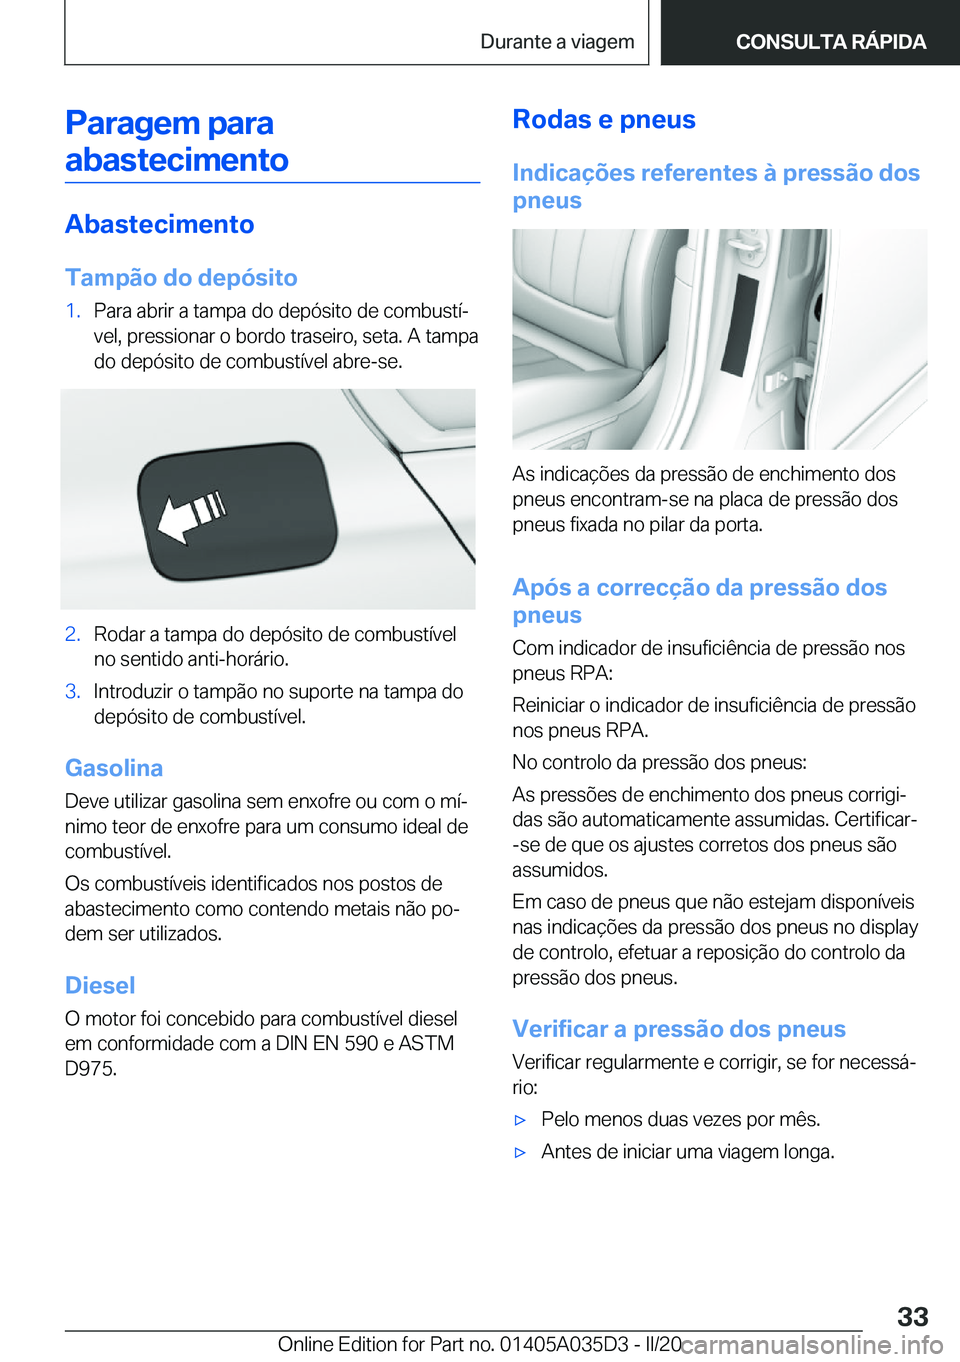 BMW X4 2020  Manual do condutor (in Portuguese) �P�a�r�a�g�e�m��p�a�r�a�a�b�a�s�t�e�c�i�m�e�n�t�o
�A�b�a�s�t�e�c�i�m�e�n�t�o
�T�a�m�p�ã�o��d�o��d�e�p�